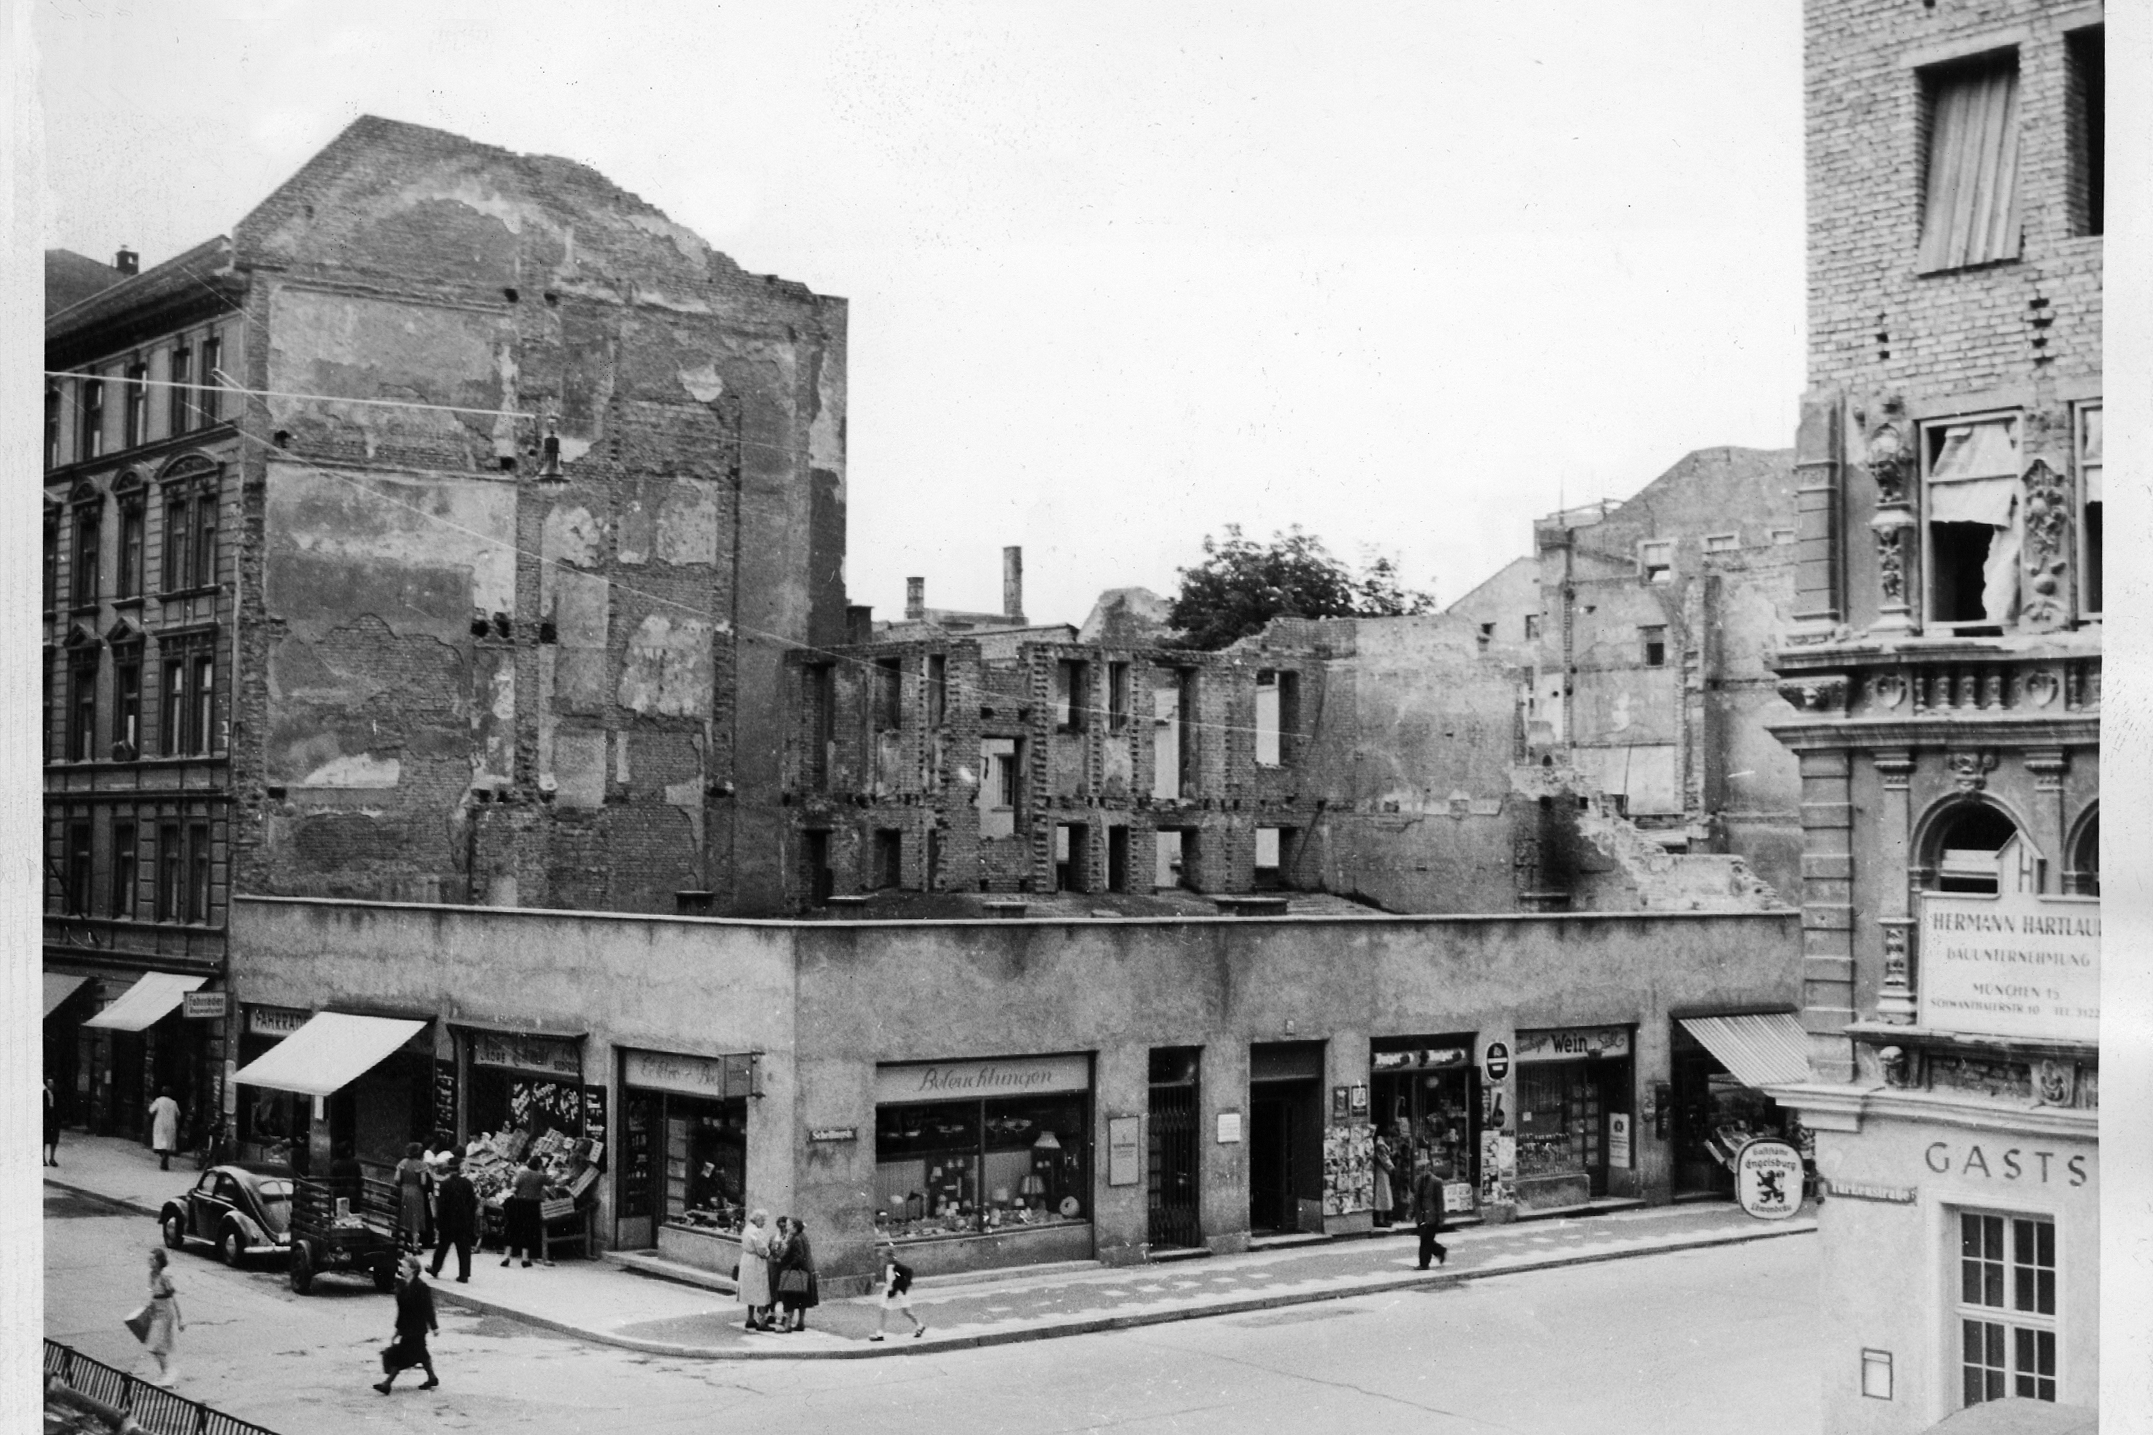 Auf dem Foto sieht man ein altes, kaputtes Gebäude in schwarz-weiß von 1945/1946.